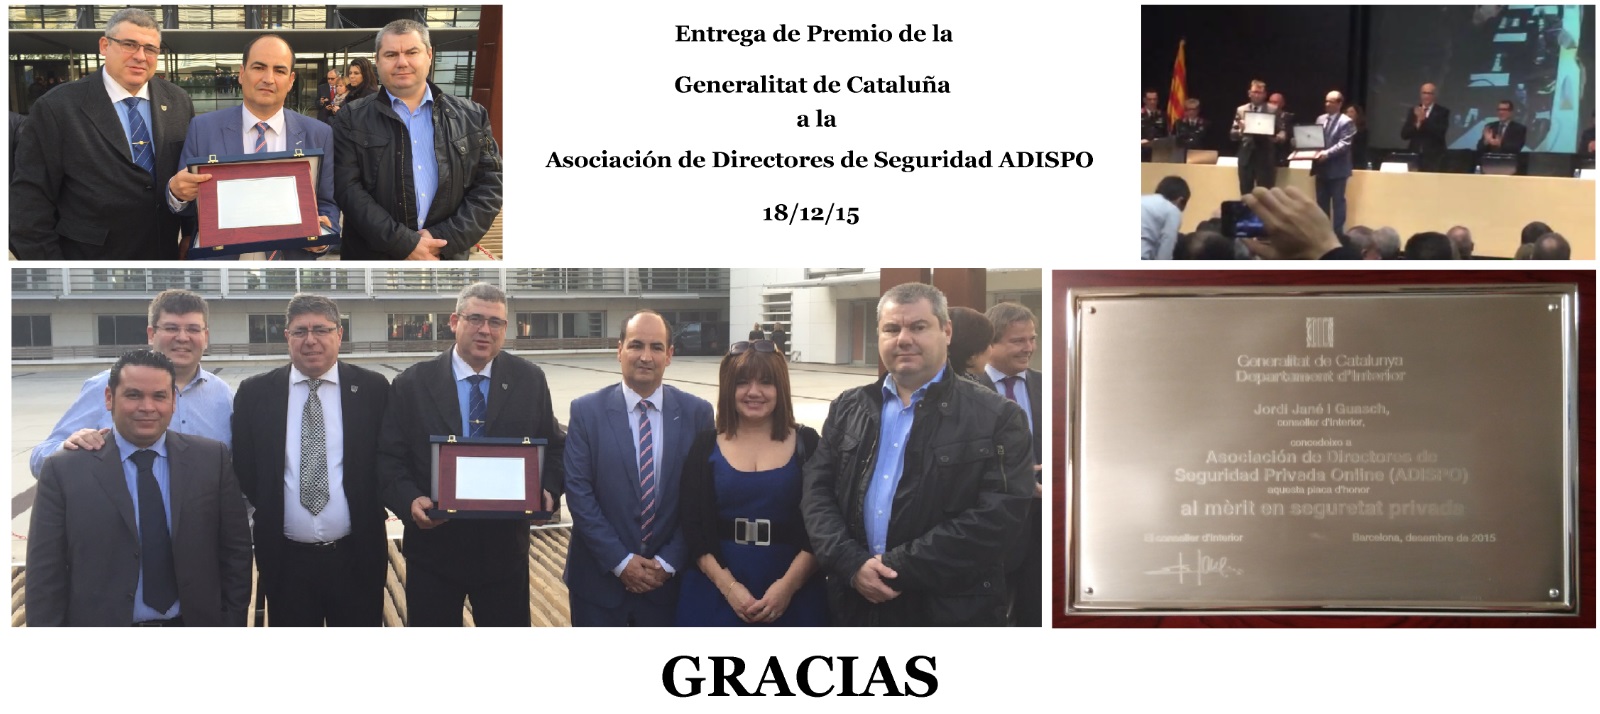 Entrega_Premio_Generalitat_a_ADISPO.jpg